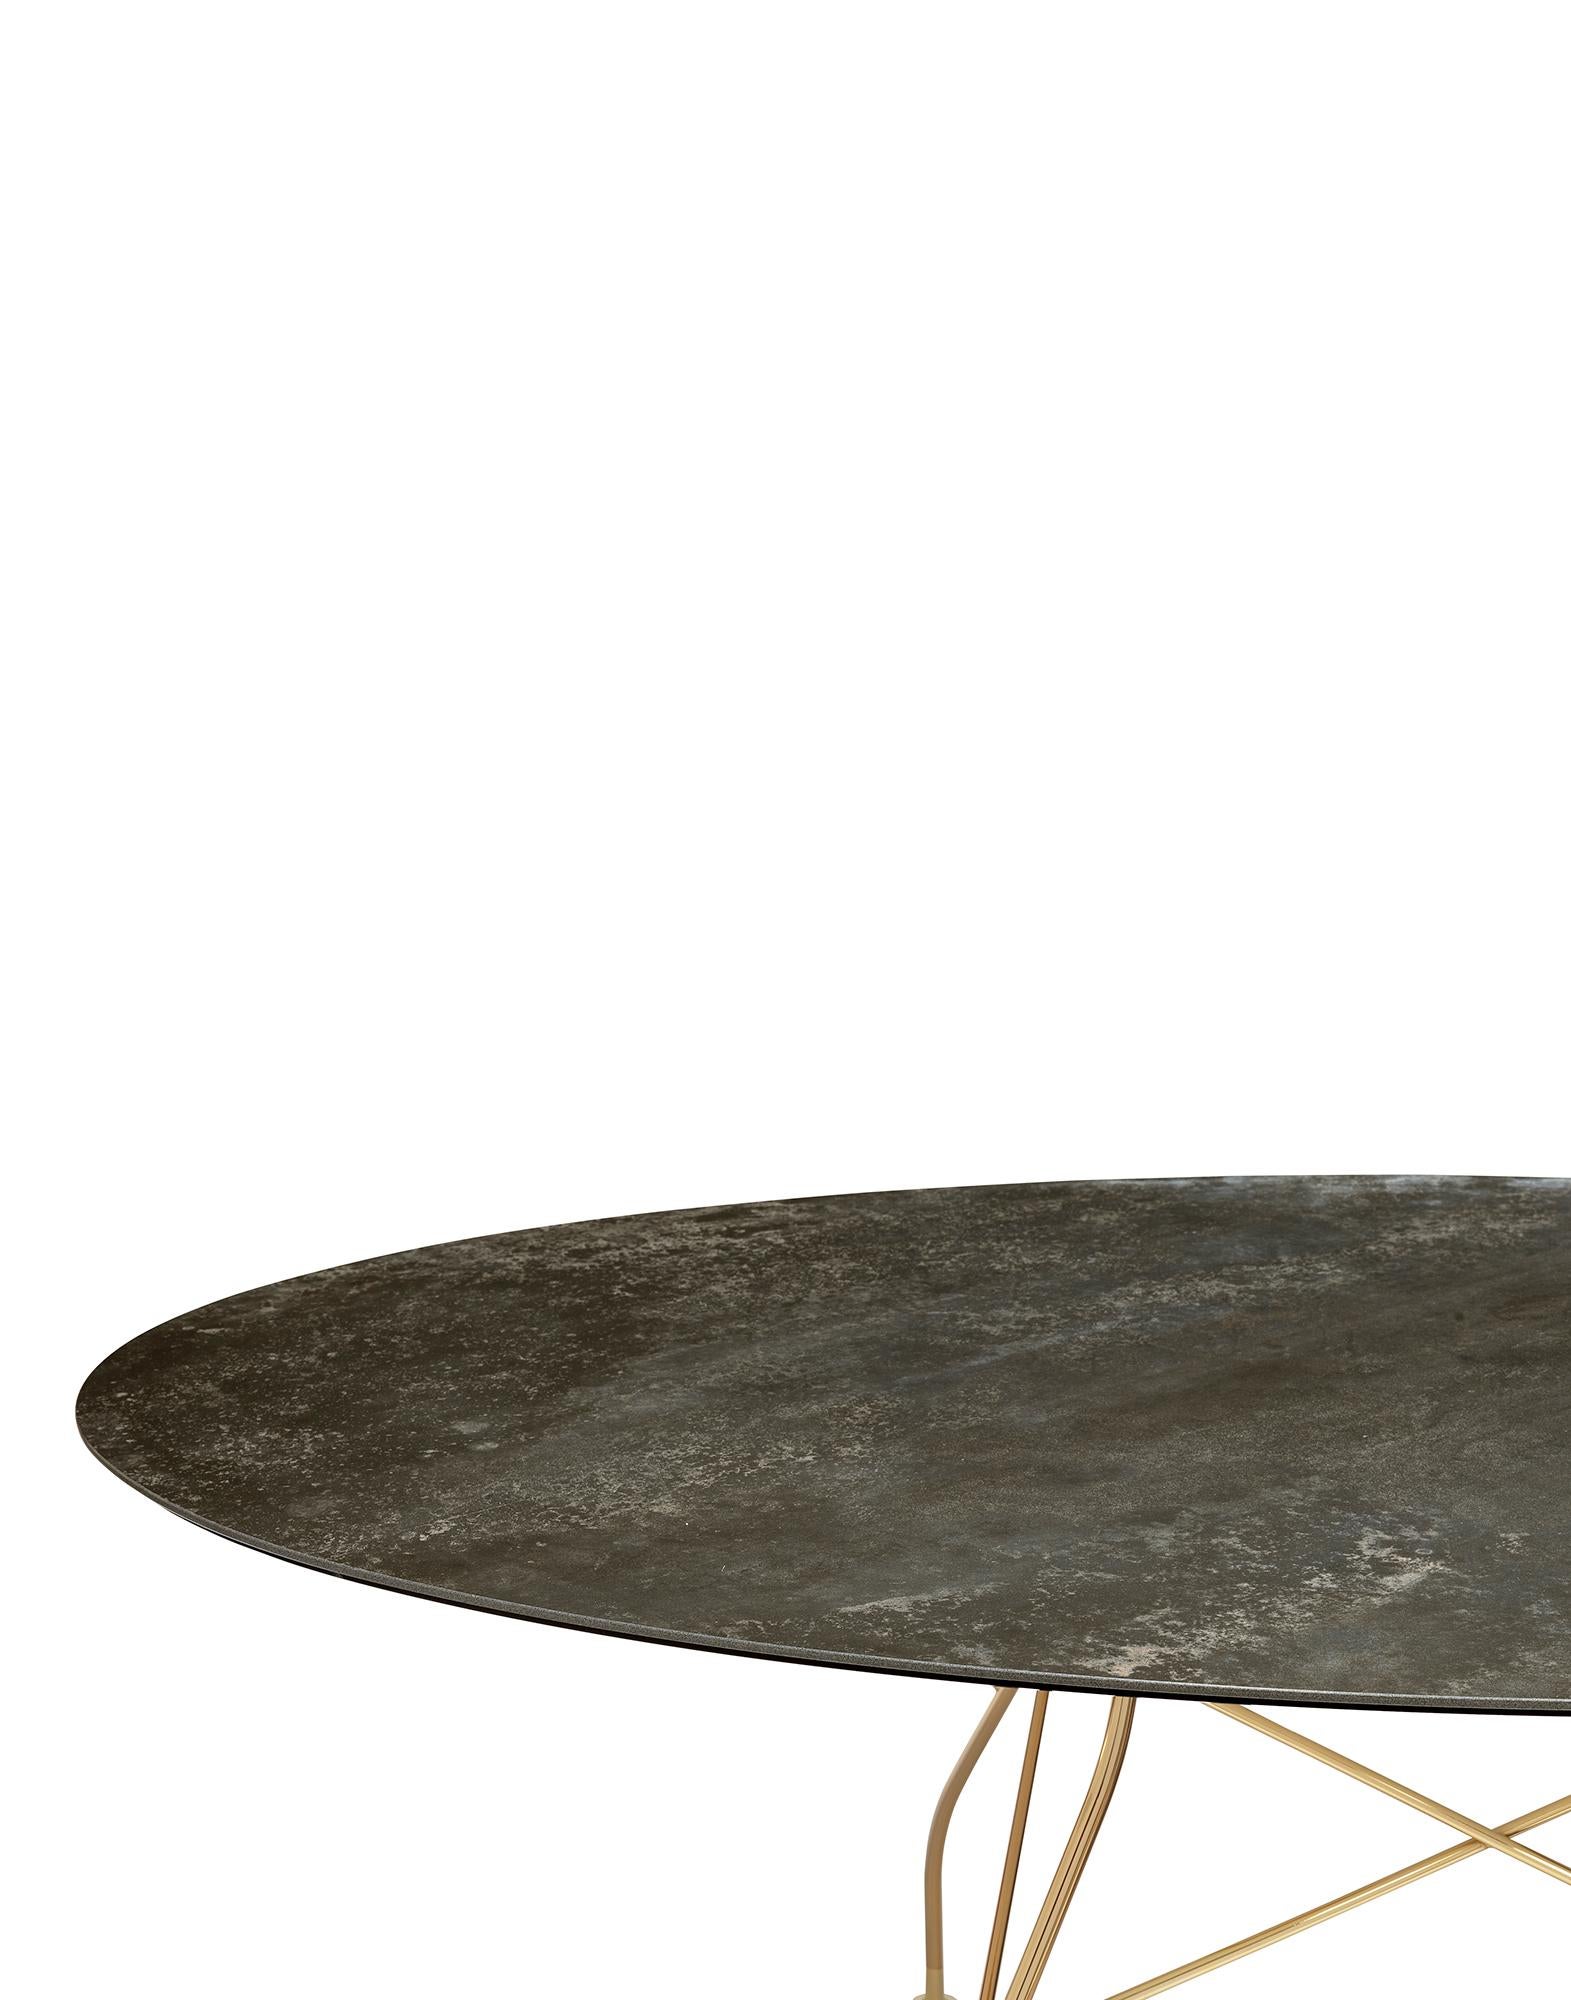 Die Tischserie TopTop zeichnet sich durch ihr Bein aus, das entweder ein rundes oder quadratisches transparentes Profil mit facettenreicher Oberfläche und Metallkern sein kann.
 